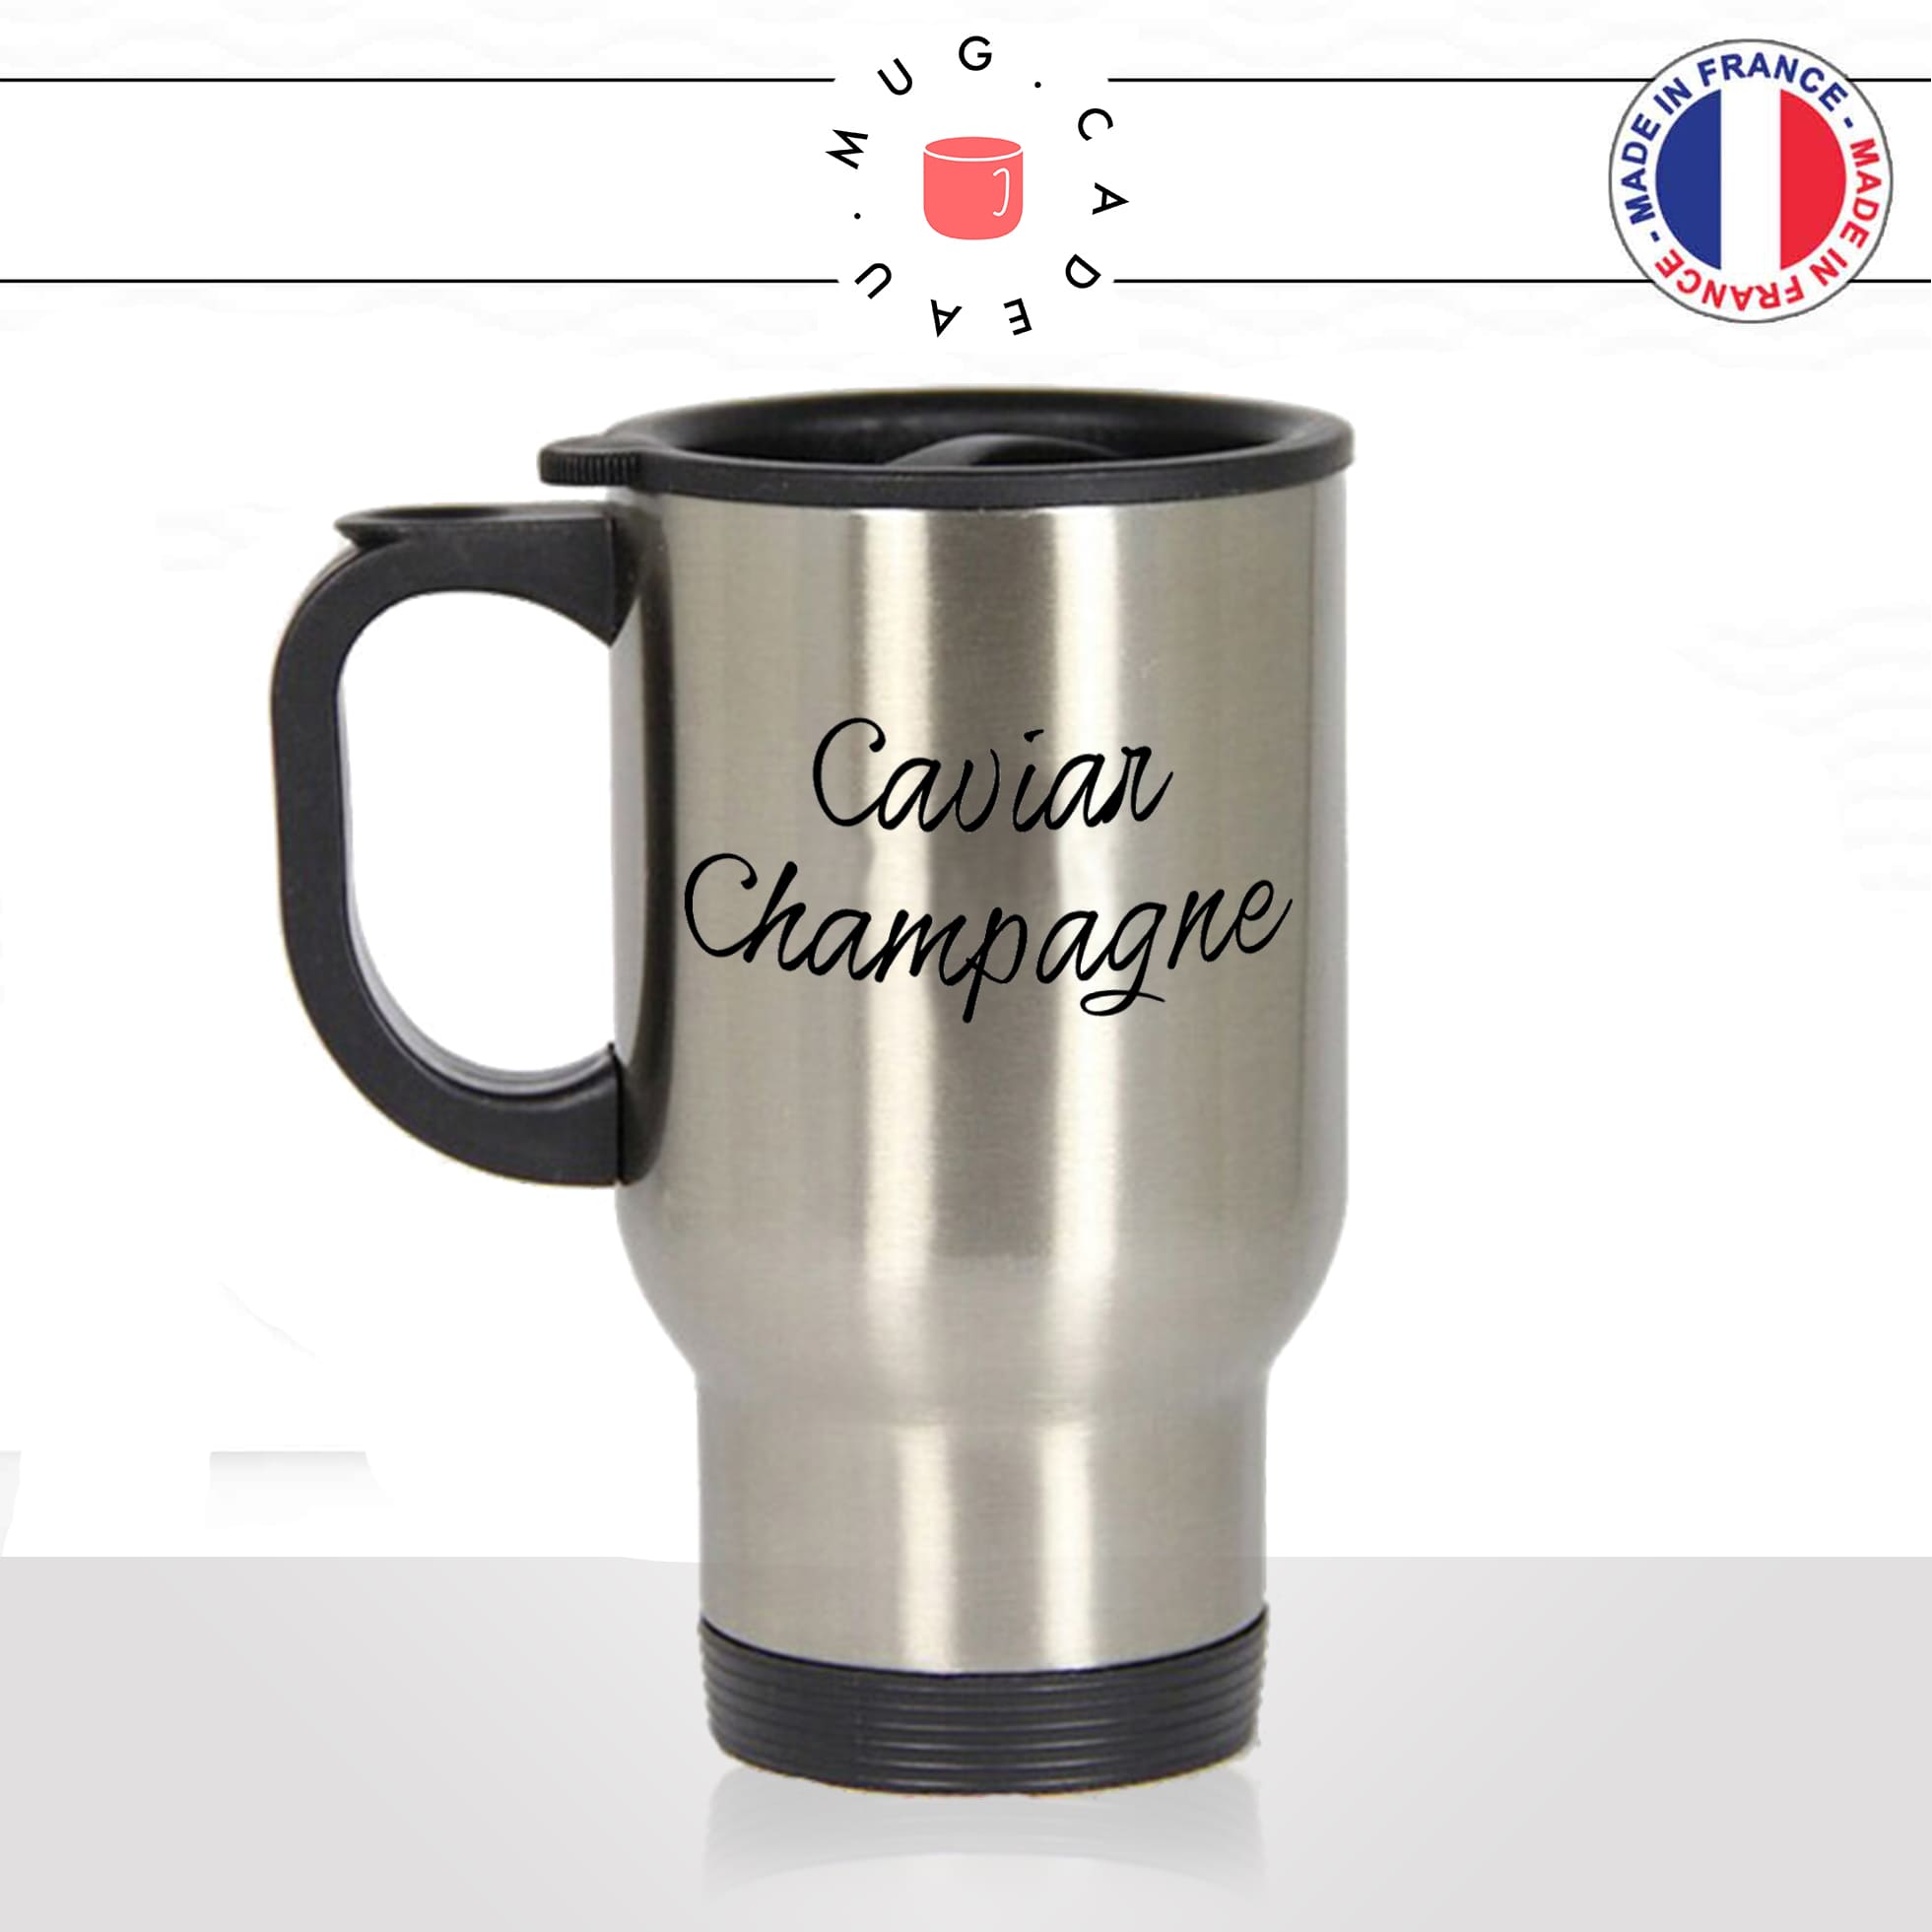 mug-tasse-thermos-isotherme-caviar-champagne-riche-apéro-homme-femme-vacances-humour-fun-cool-idée-cadeau-original-personnalisé